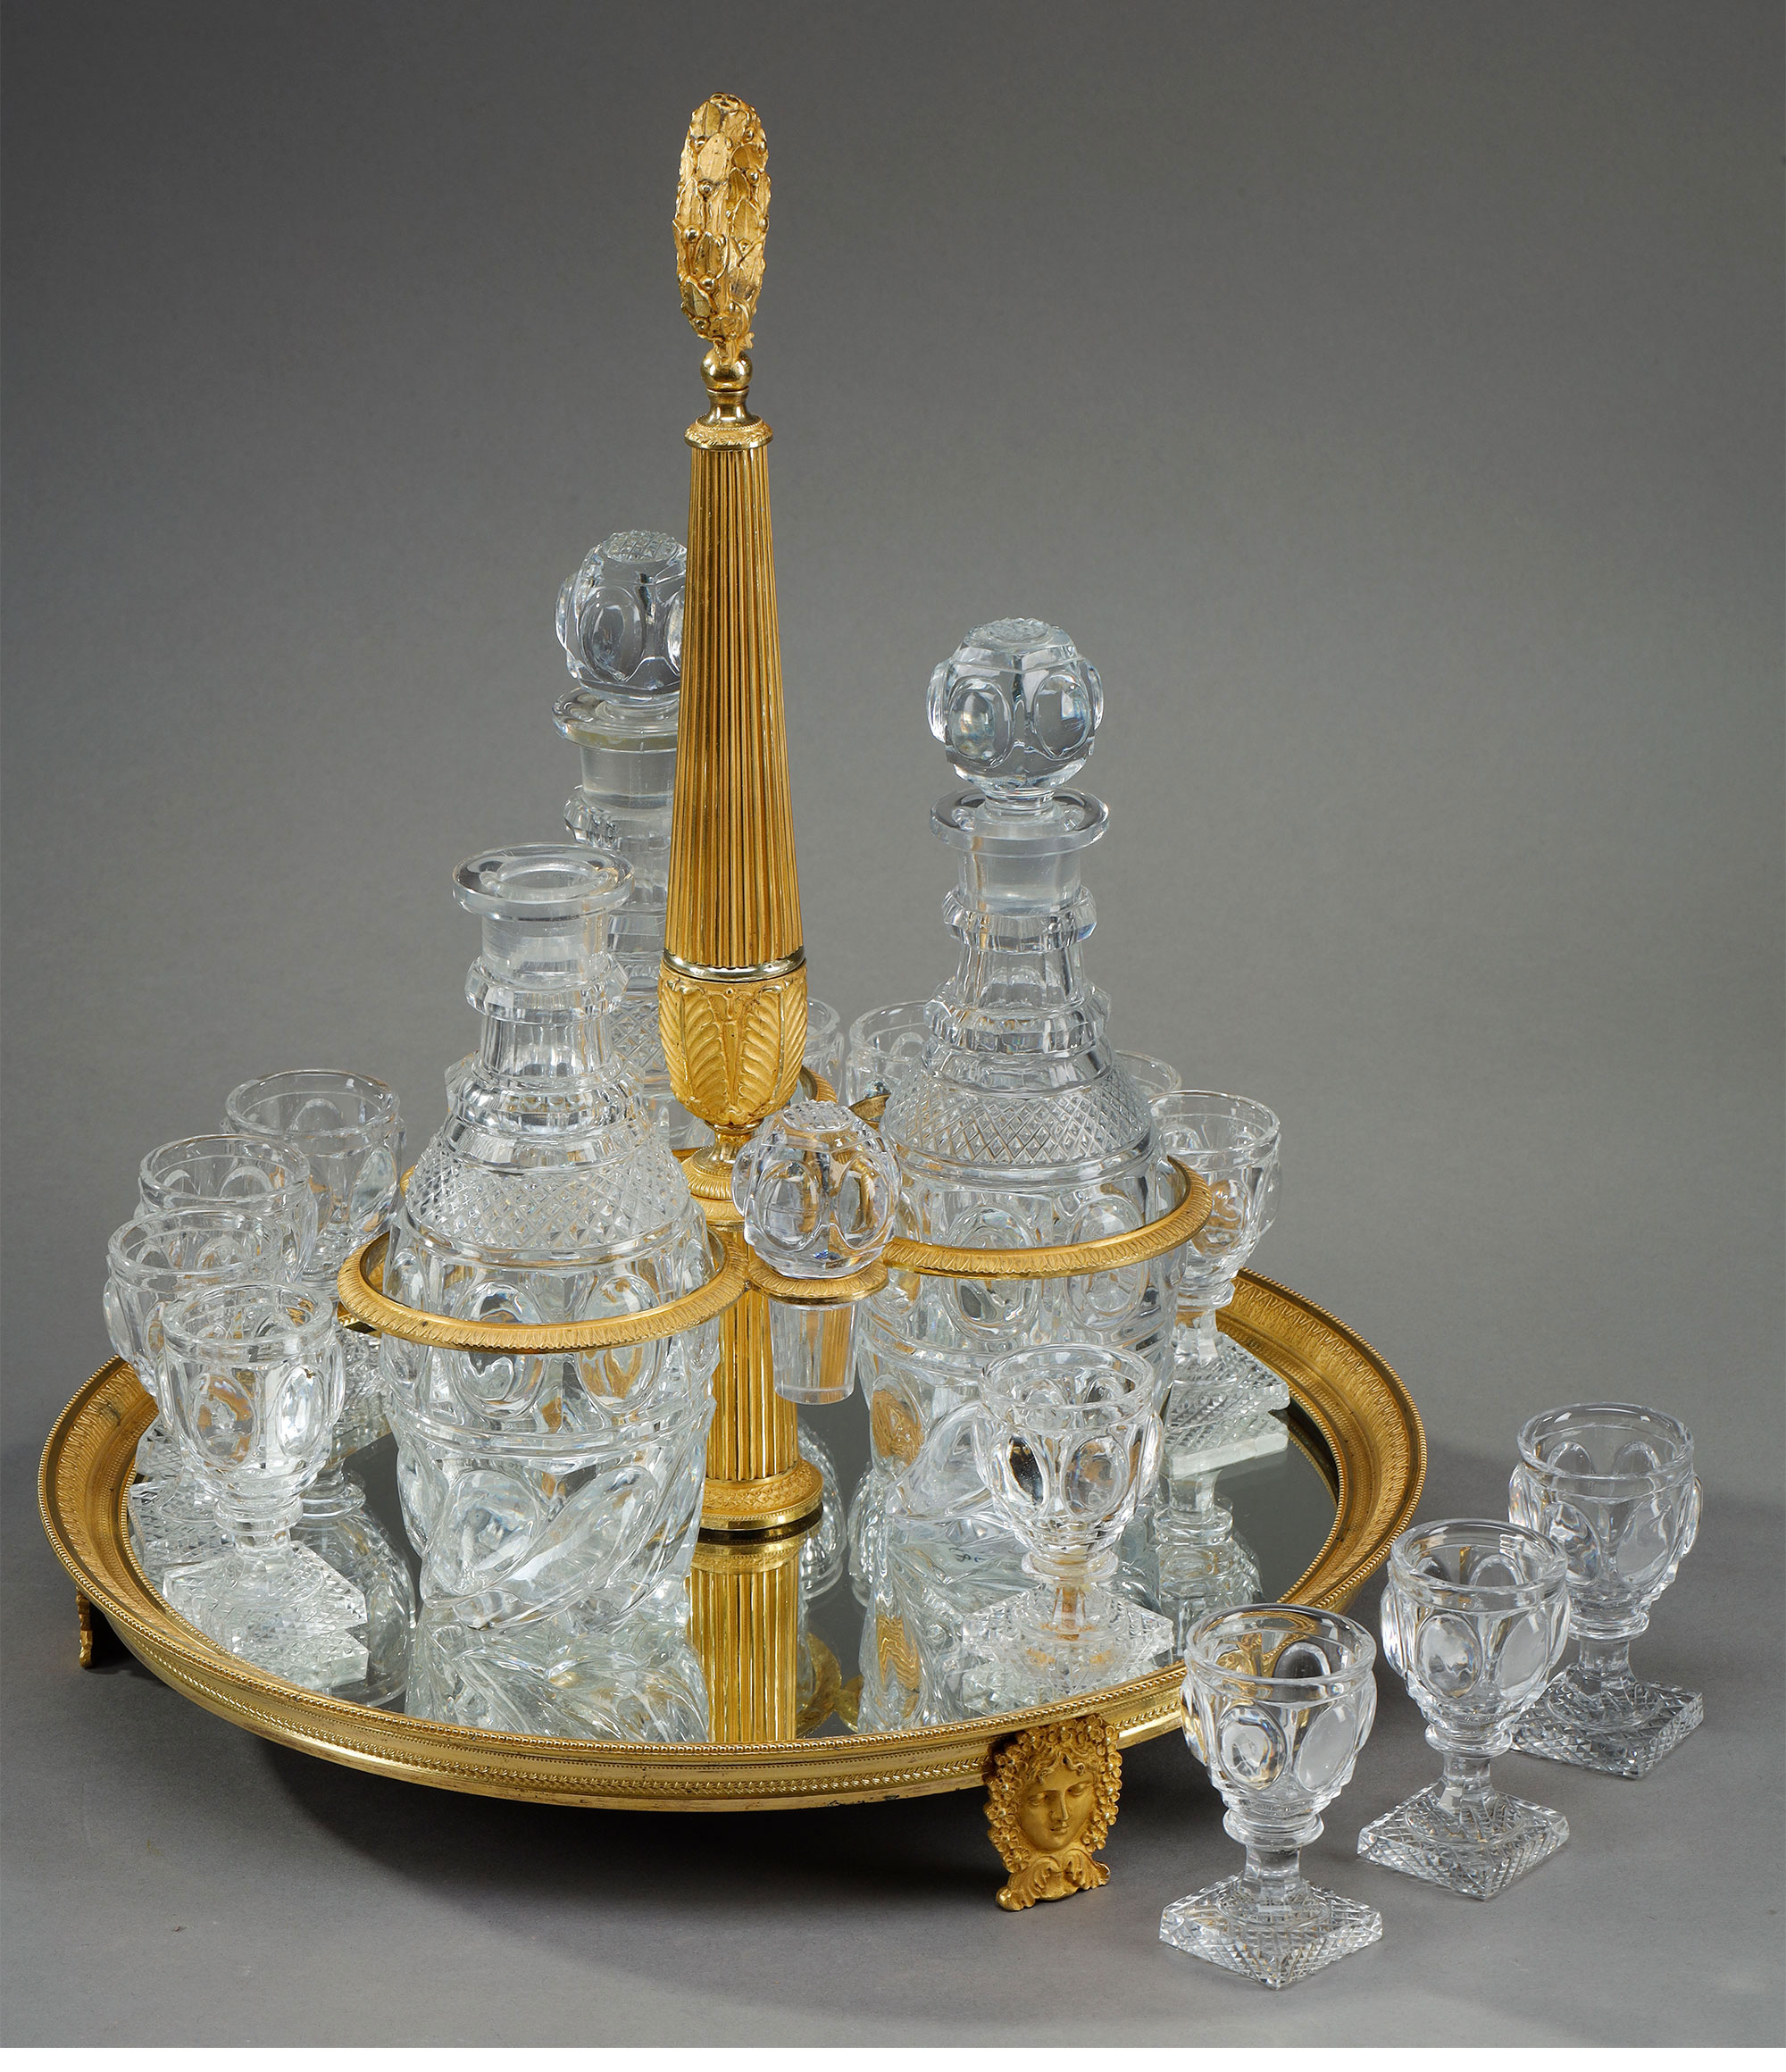 独角鹿西洋古董1820年代法国出品铜鎏金装饰底座利口酒箱 配水晶醒酒瓶及酒杯